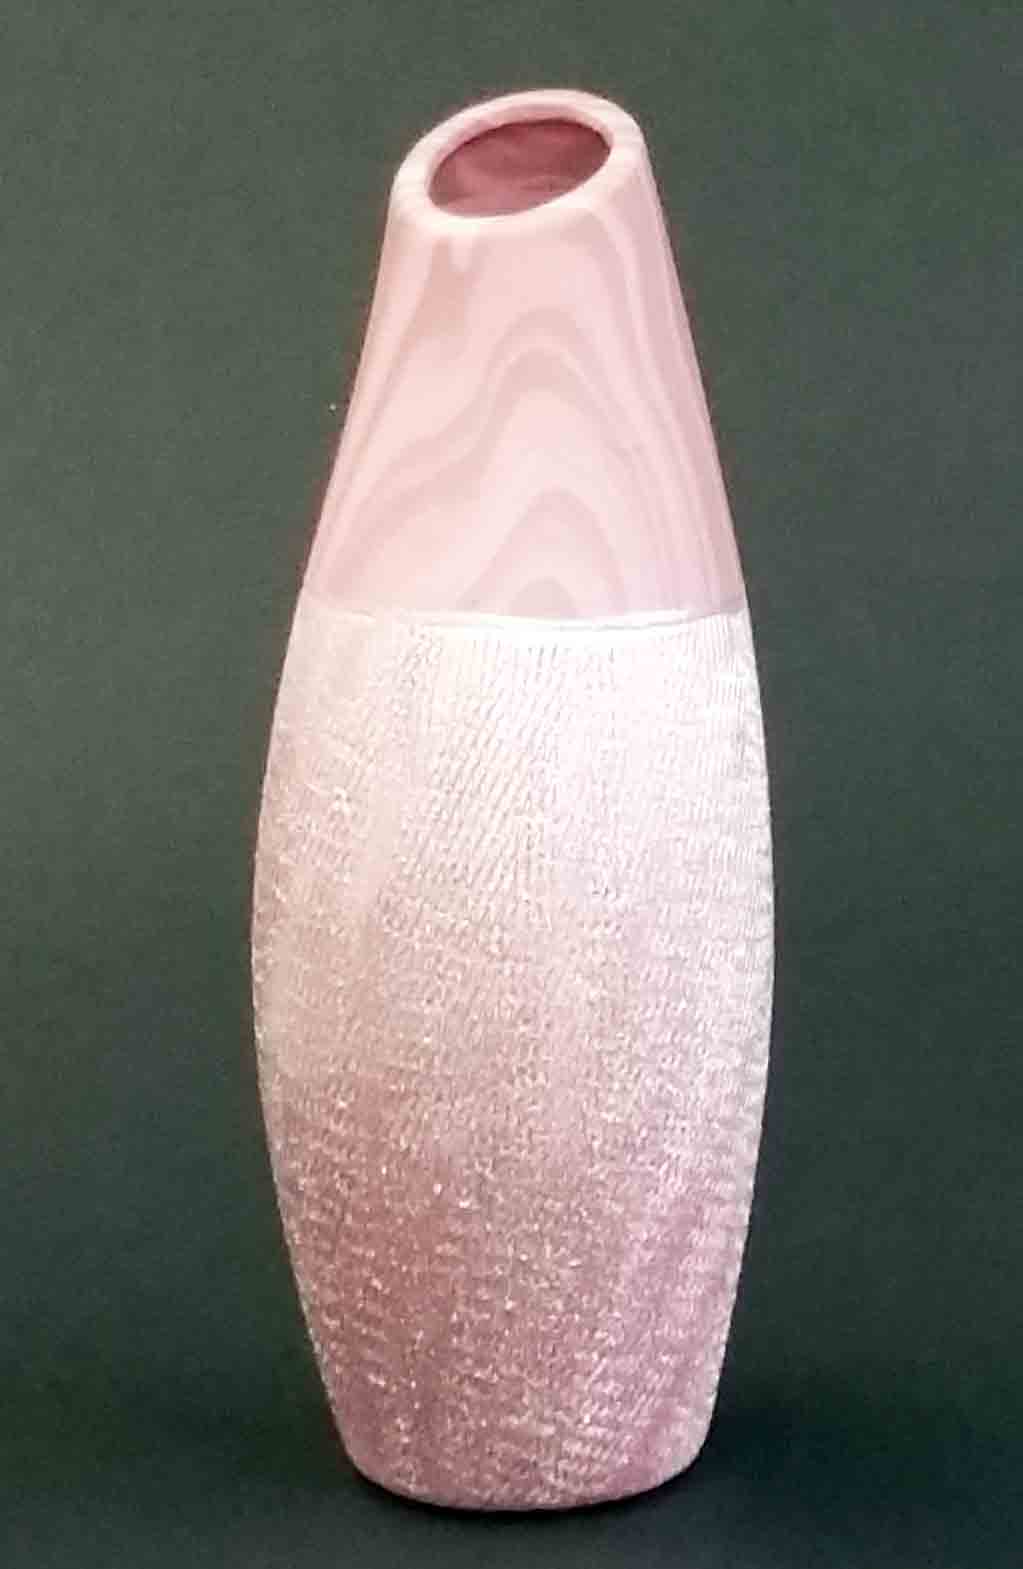 DC64 - 9.5" Deco Ceramic Vase - 8.95 ea